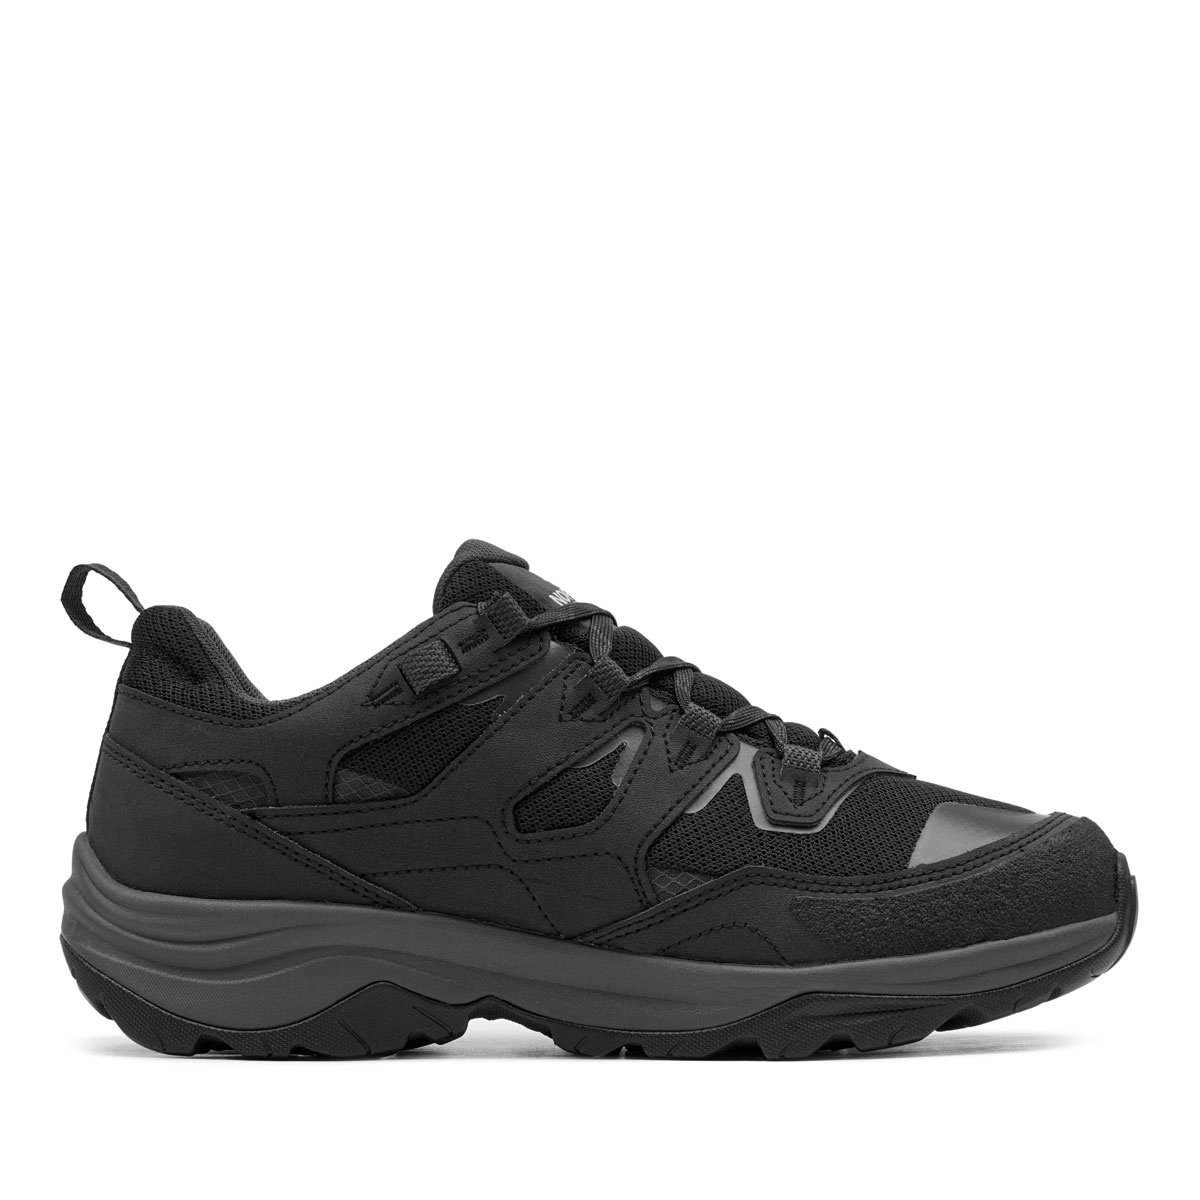 The North Face Hedgehog 3 Waterproof Мъжки спортни обувки NF0A818QKT0